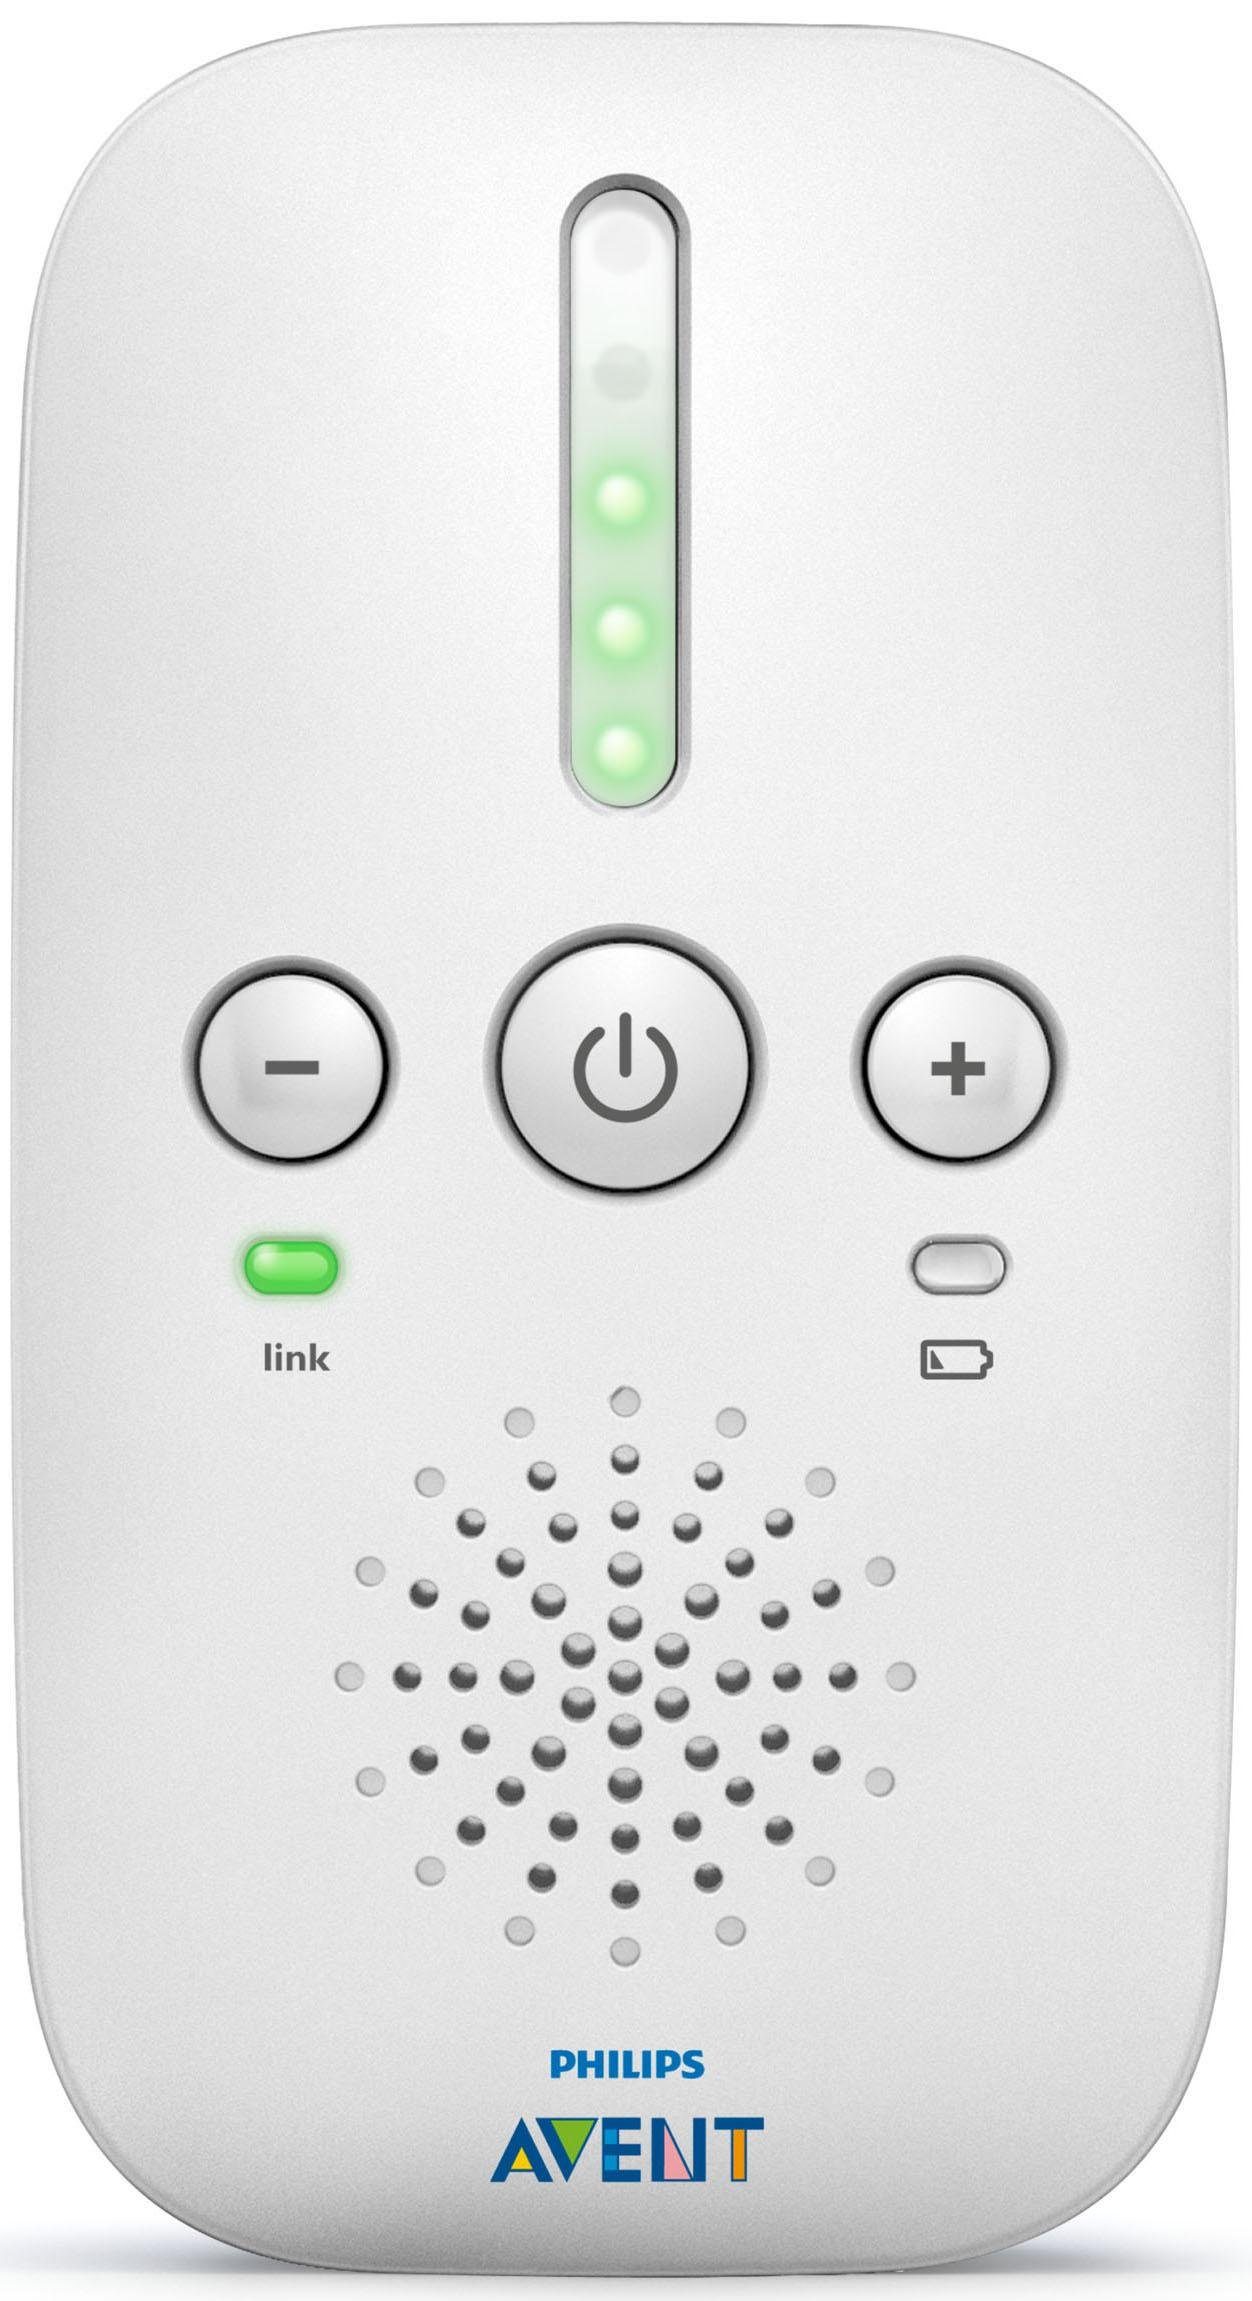 Philips AVENT Babyphone SCD503/26, mit ECO-Modus Nachtlicht Smart und